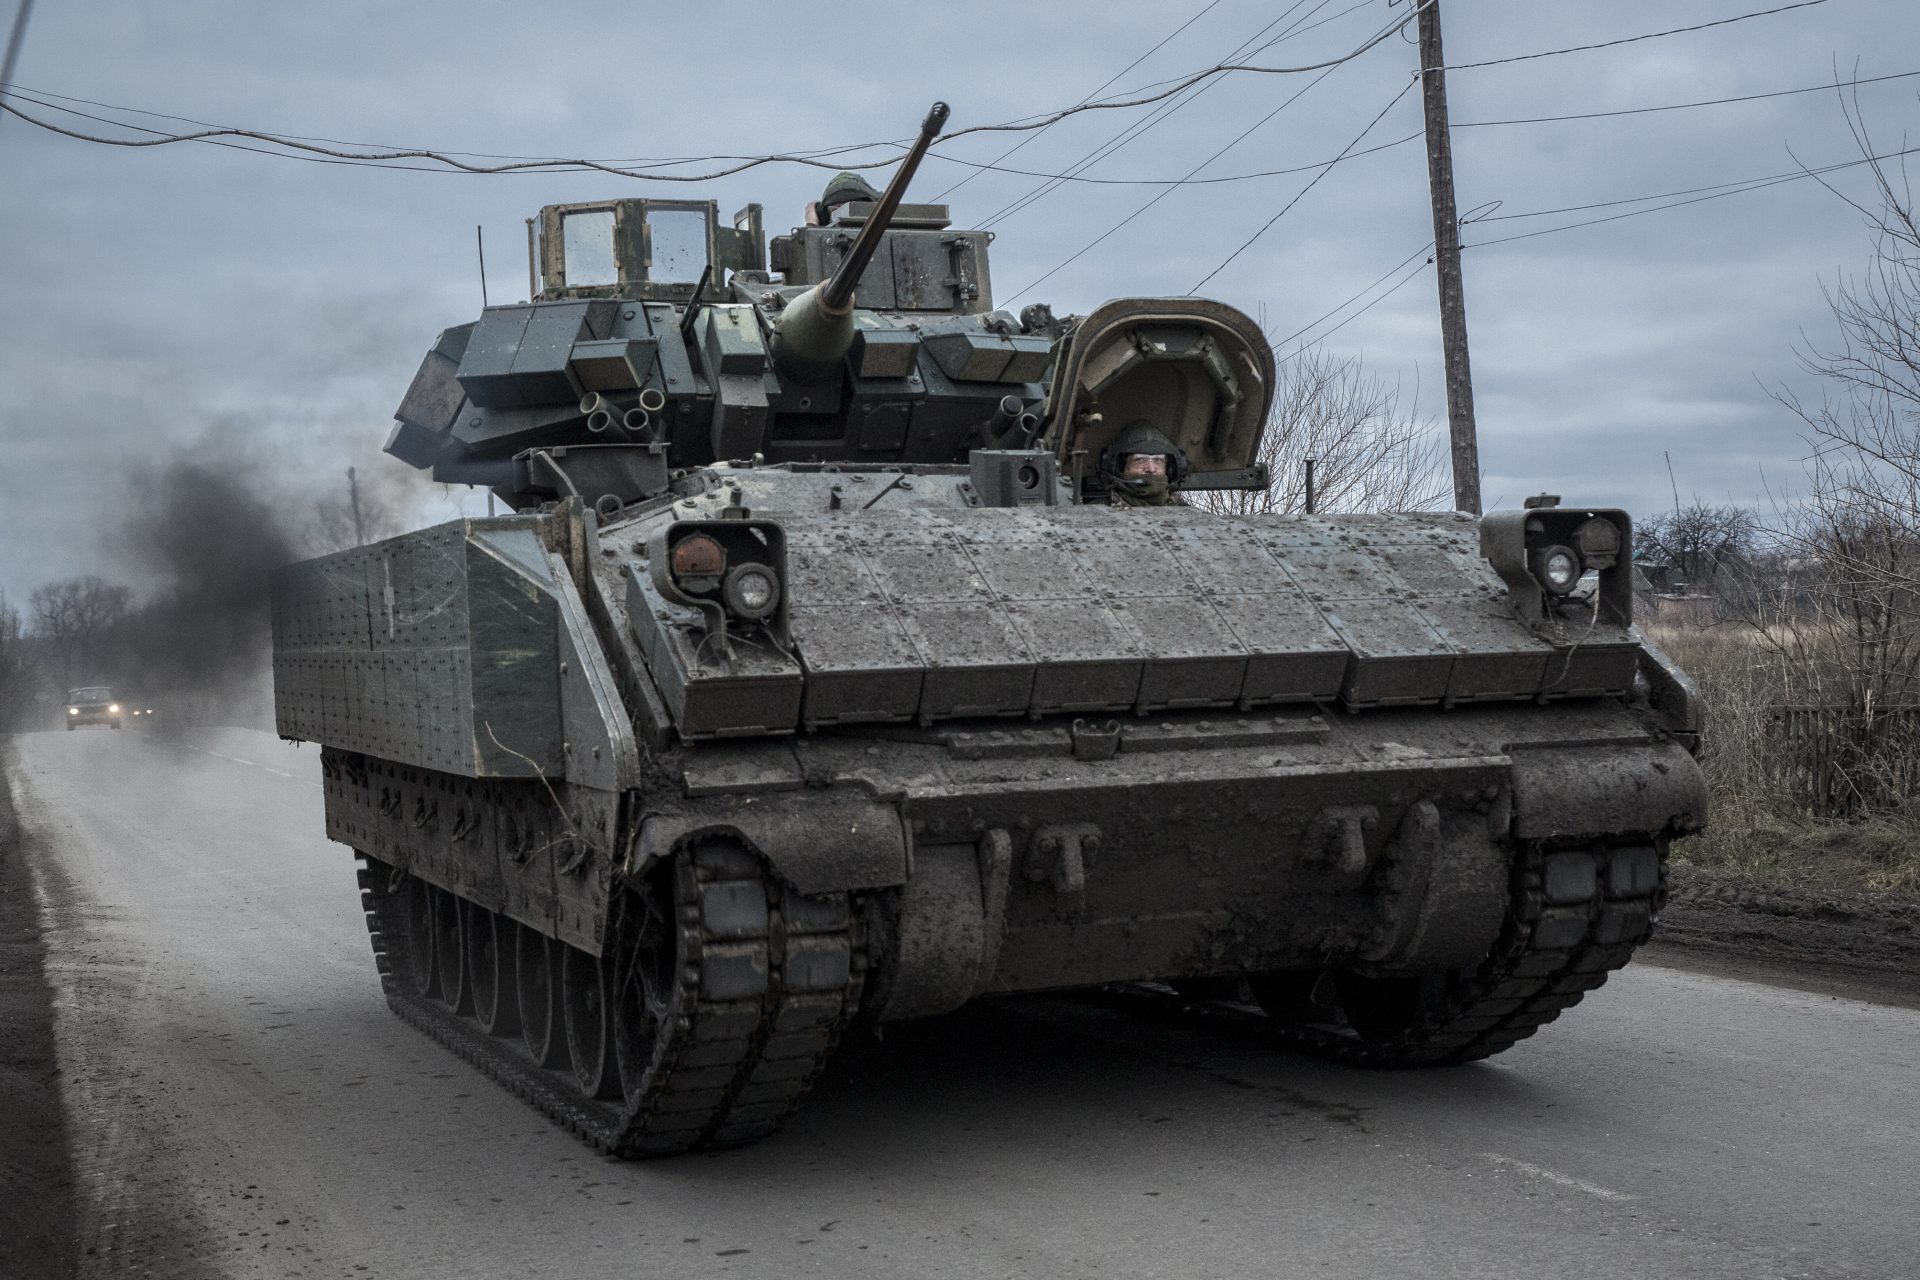 Amerikaanse M2's leiden tot grote verliezen onder Russische troepen in Oekraïne